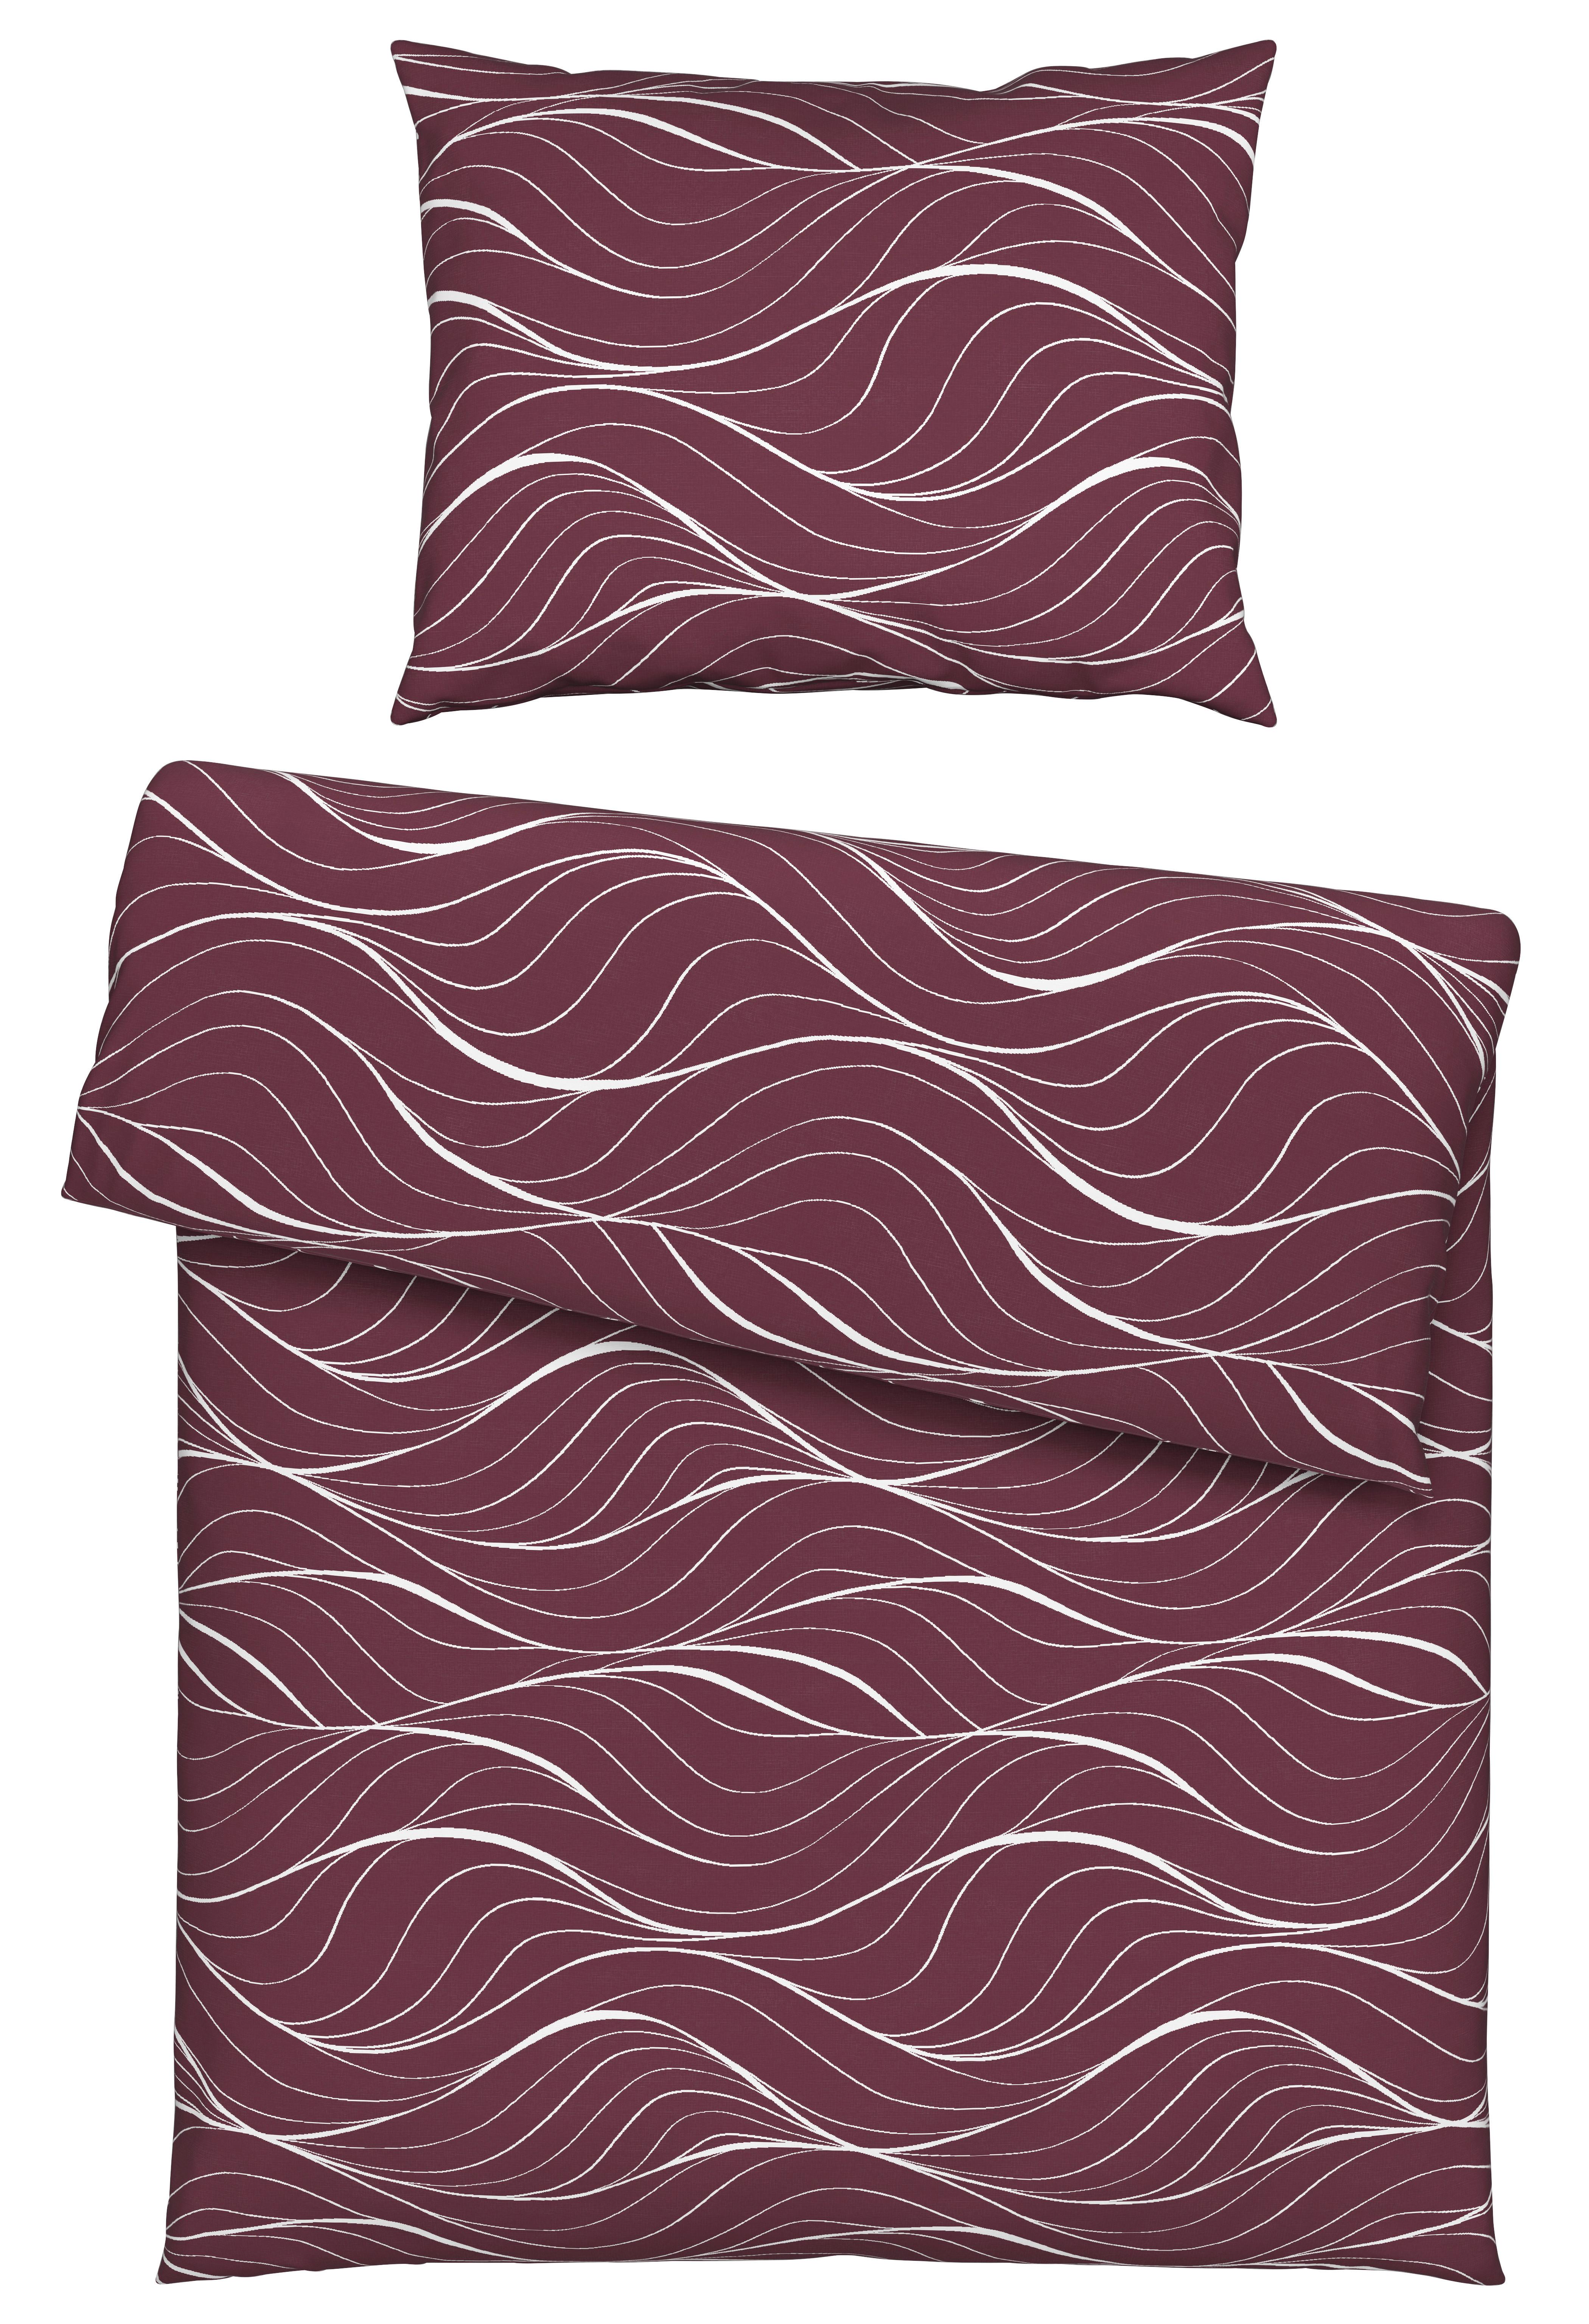 Povlečení Waves, 70/90 140/200cm - bobulová, textil (140/200cm) - Modern Living